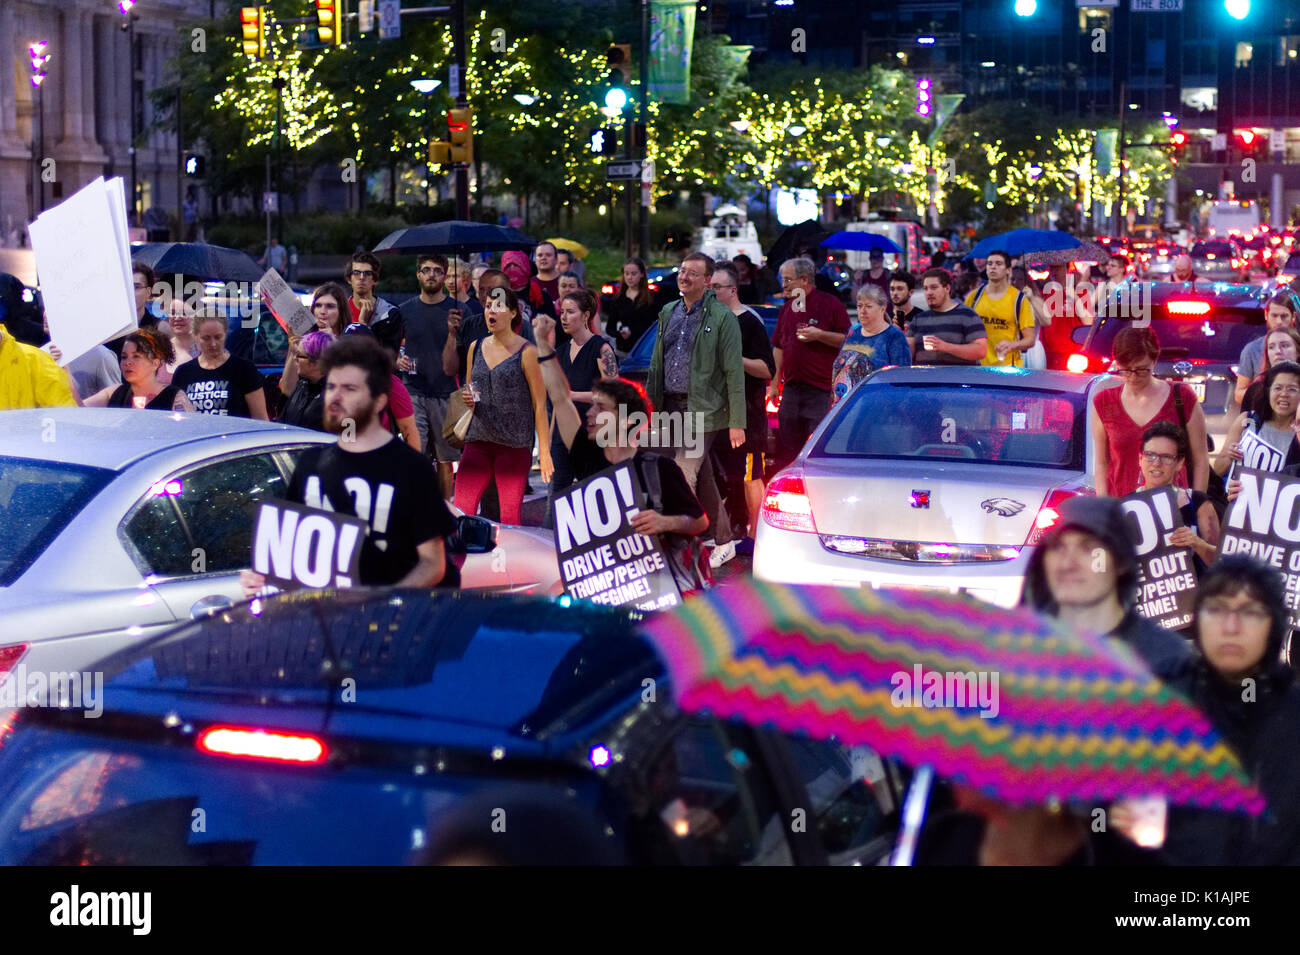 Después de una vigilia en memoria de las víctimas del ataque terrorista de Charlottesville Anti-Trump manifestantes bloque brevemente la vid expresa la manera en el centro de la ciudad de Filadelfia, P Foto de stock